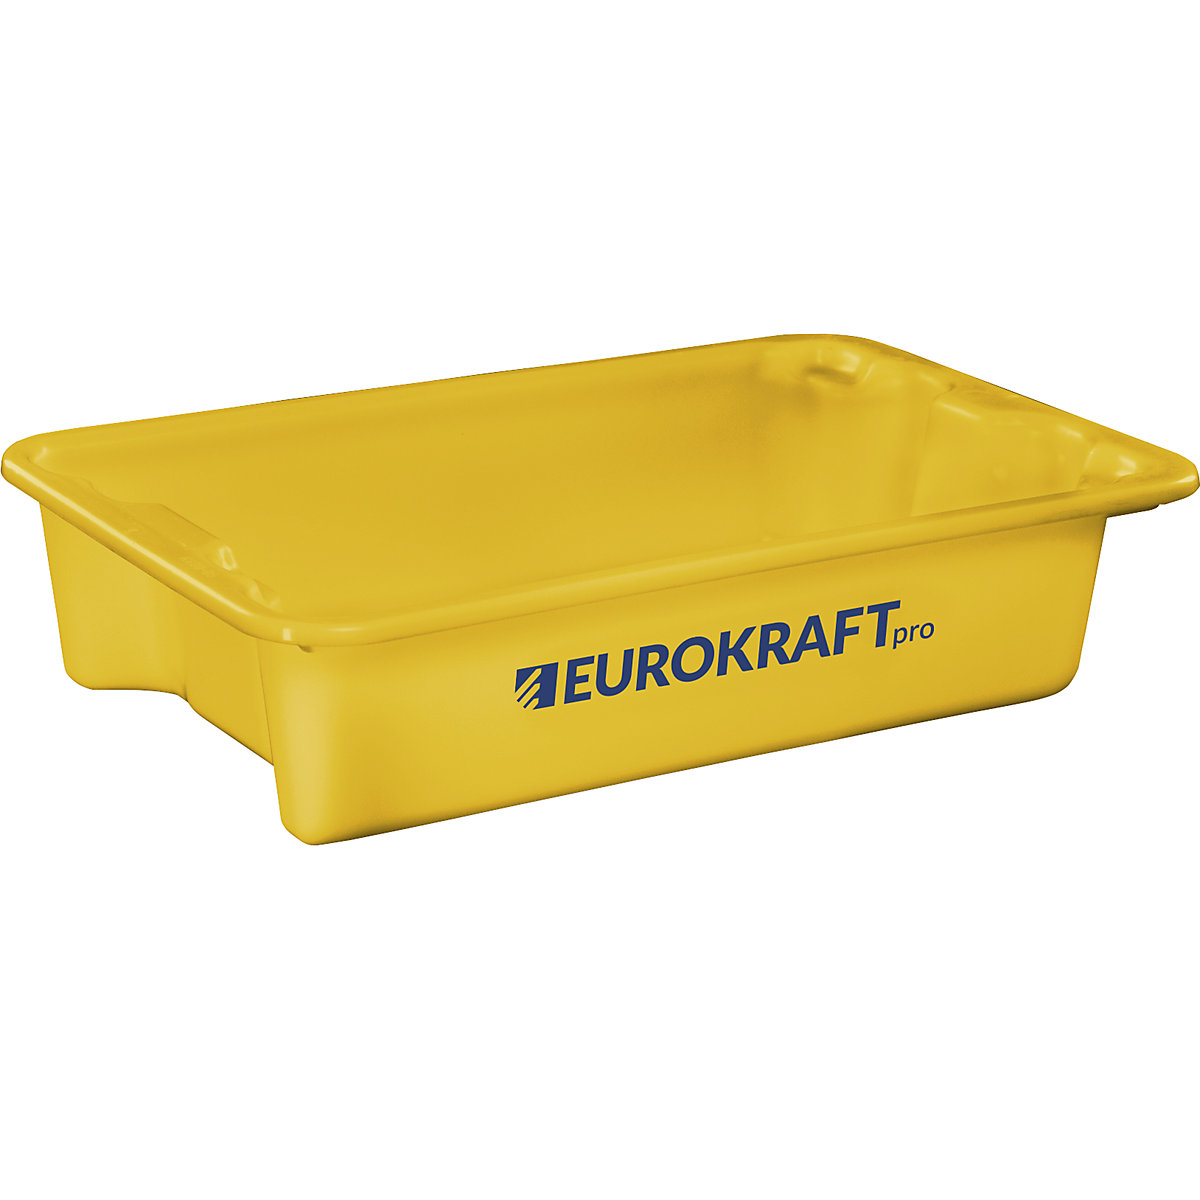 EUROKRAFTpro – Otočná stohovací nádoba z polypropylenu vhodného pro potraviny, obsah 18 litrů, bal.j. 3 ks, stěny a dno plné, žlutá